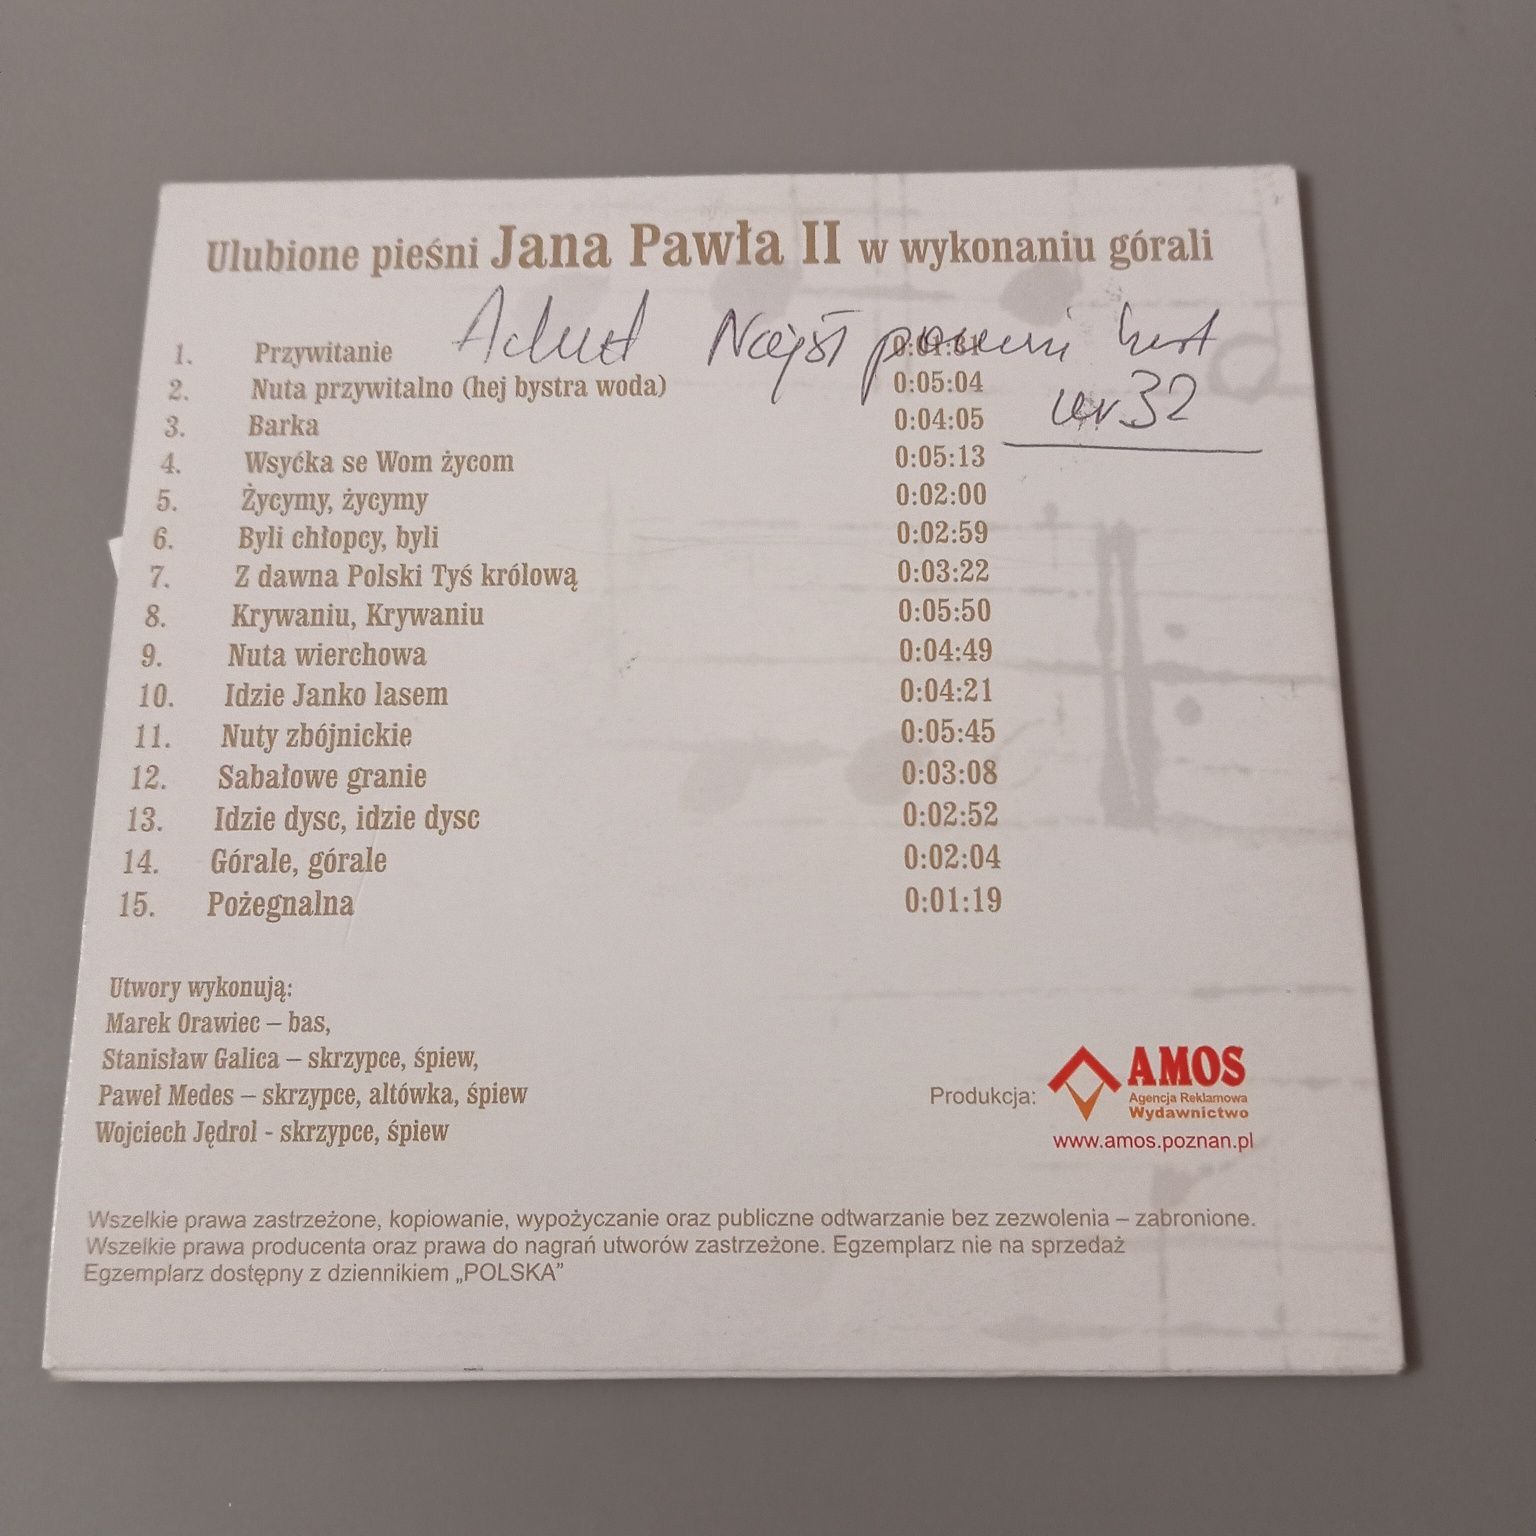 Ulubione Pieśni Jana Pawła II w wykonaniu górali, CD, płyta w bdb stan